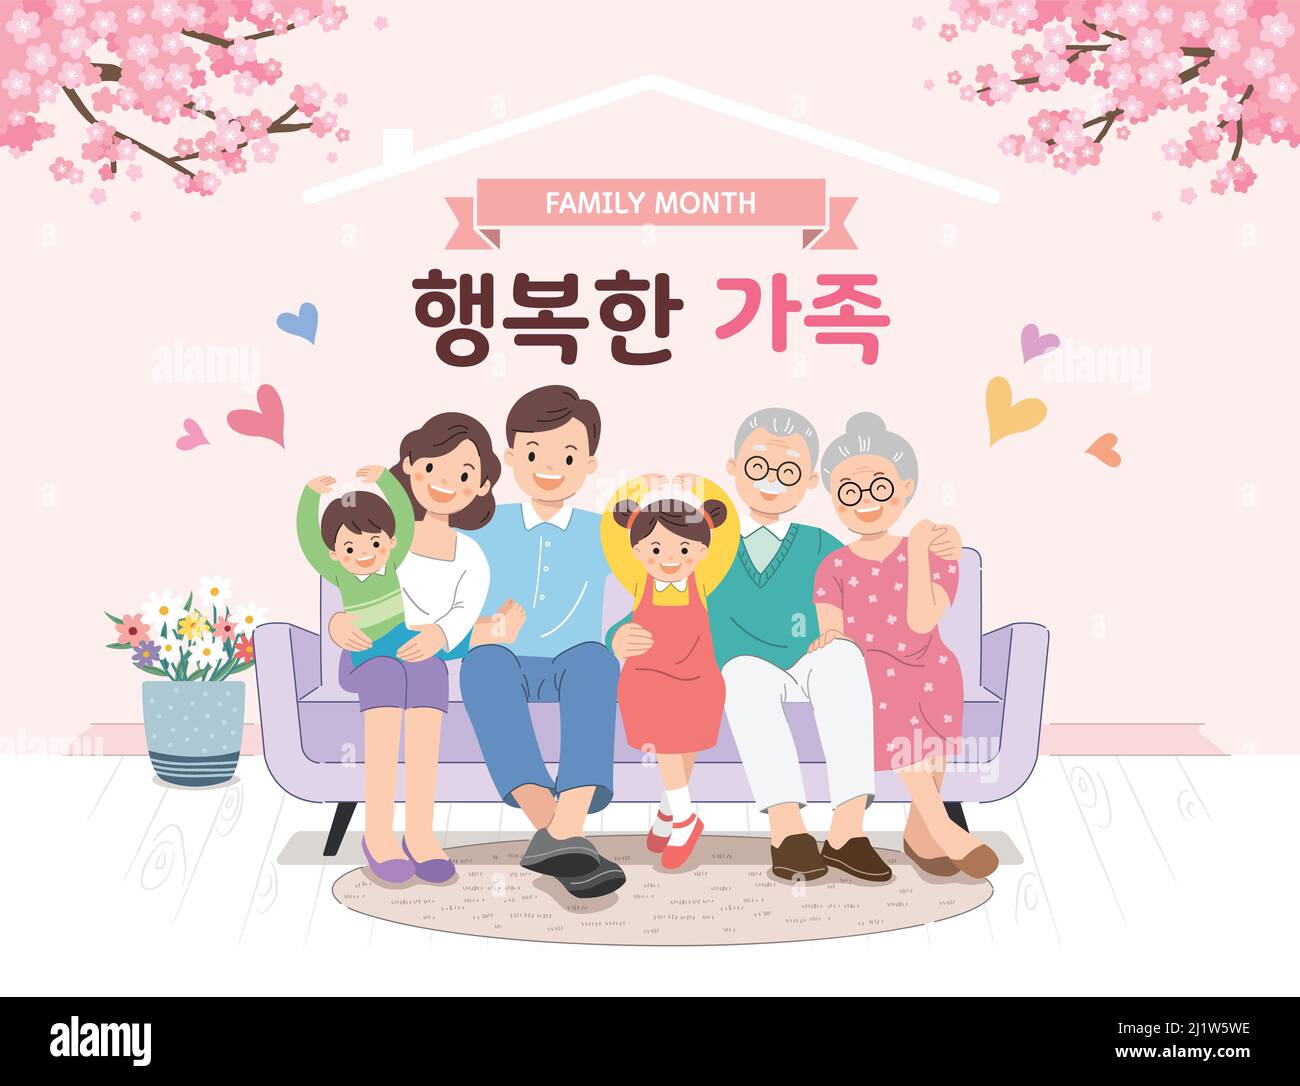 Familienmonat, glückliche Familie auf einem Stuhl sitzend. Glückliche Familie, Koreanische Übersetzung. Stock Vektor